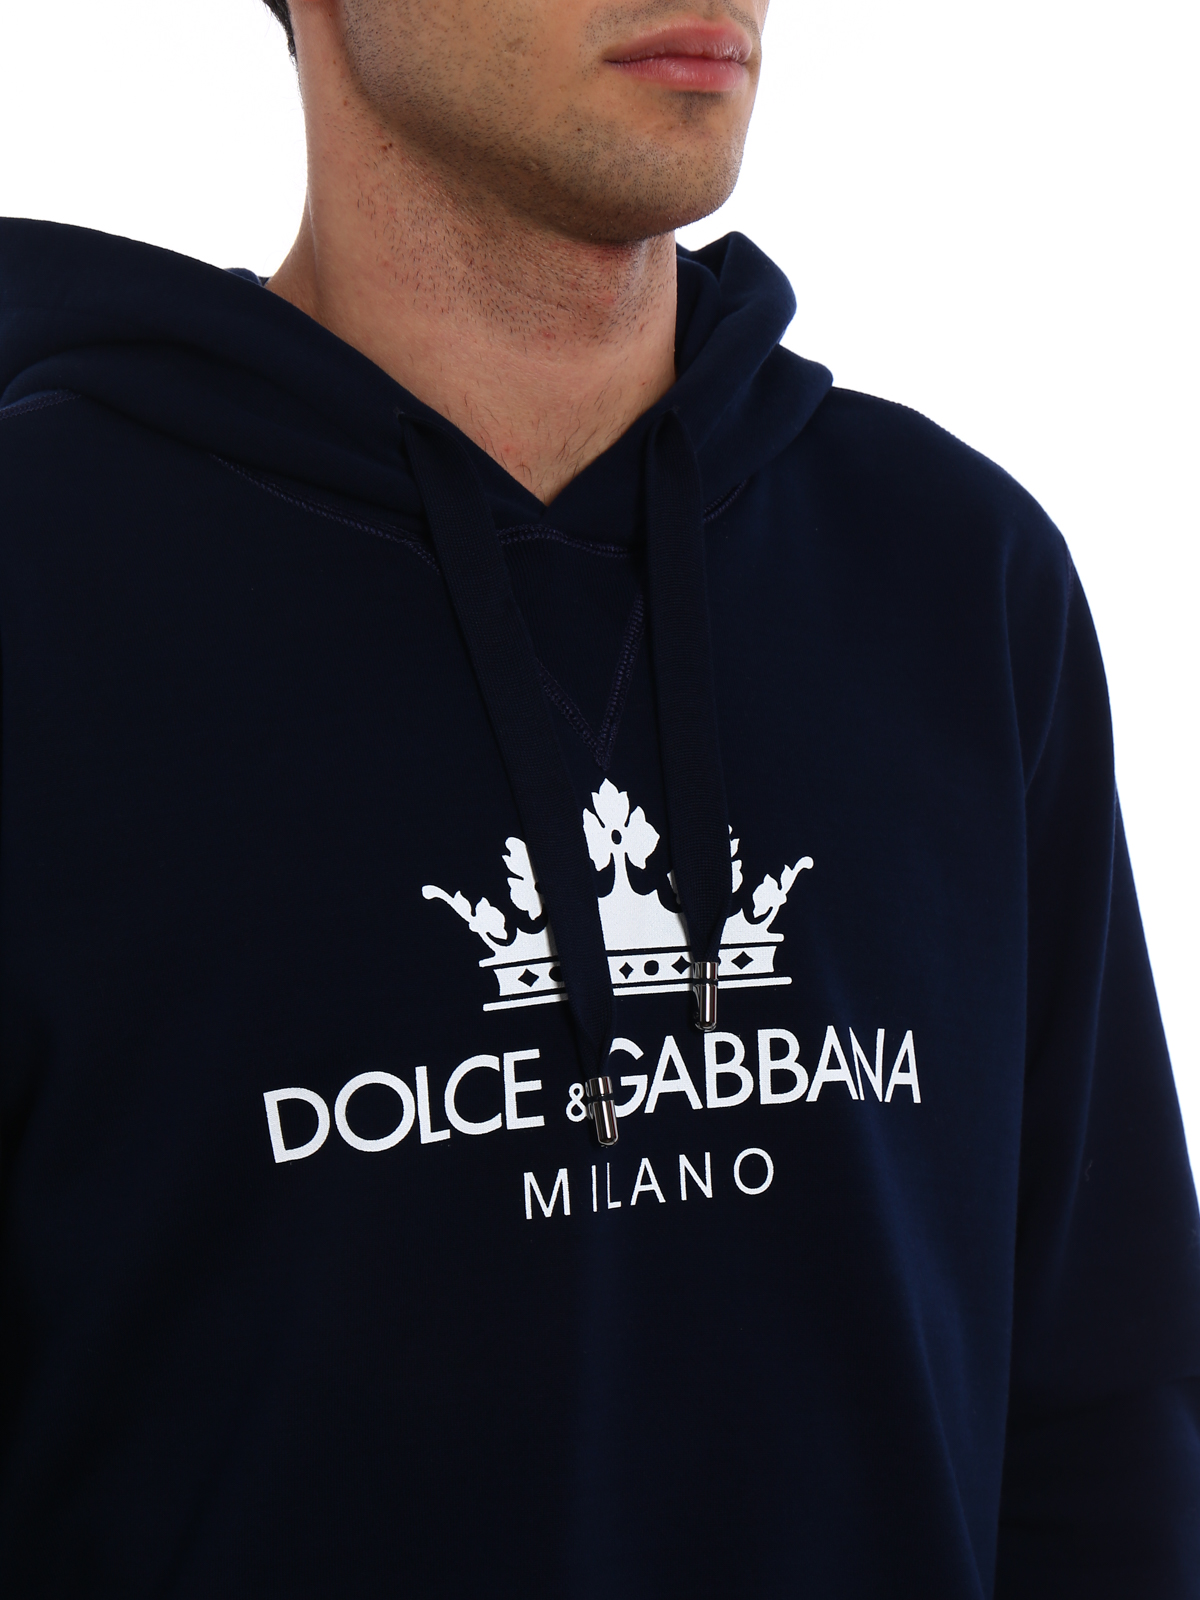 líder carolino salario Sudaderas y suéteres Dolce & Gabbana - Sudadera - Azul - G9KJ2THU7ALB0065